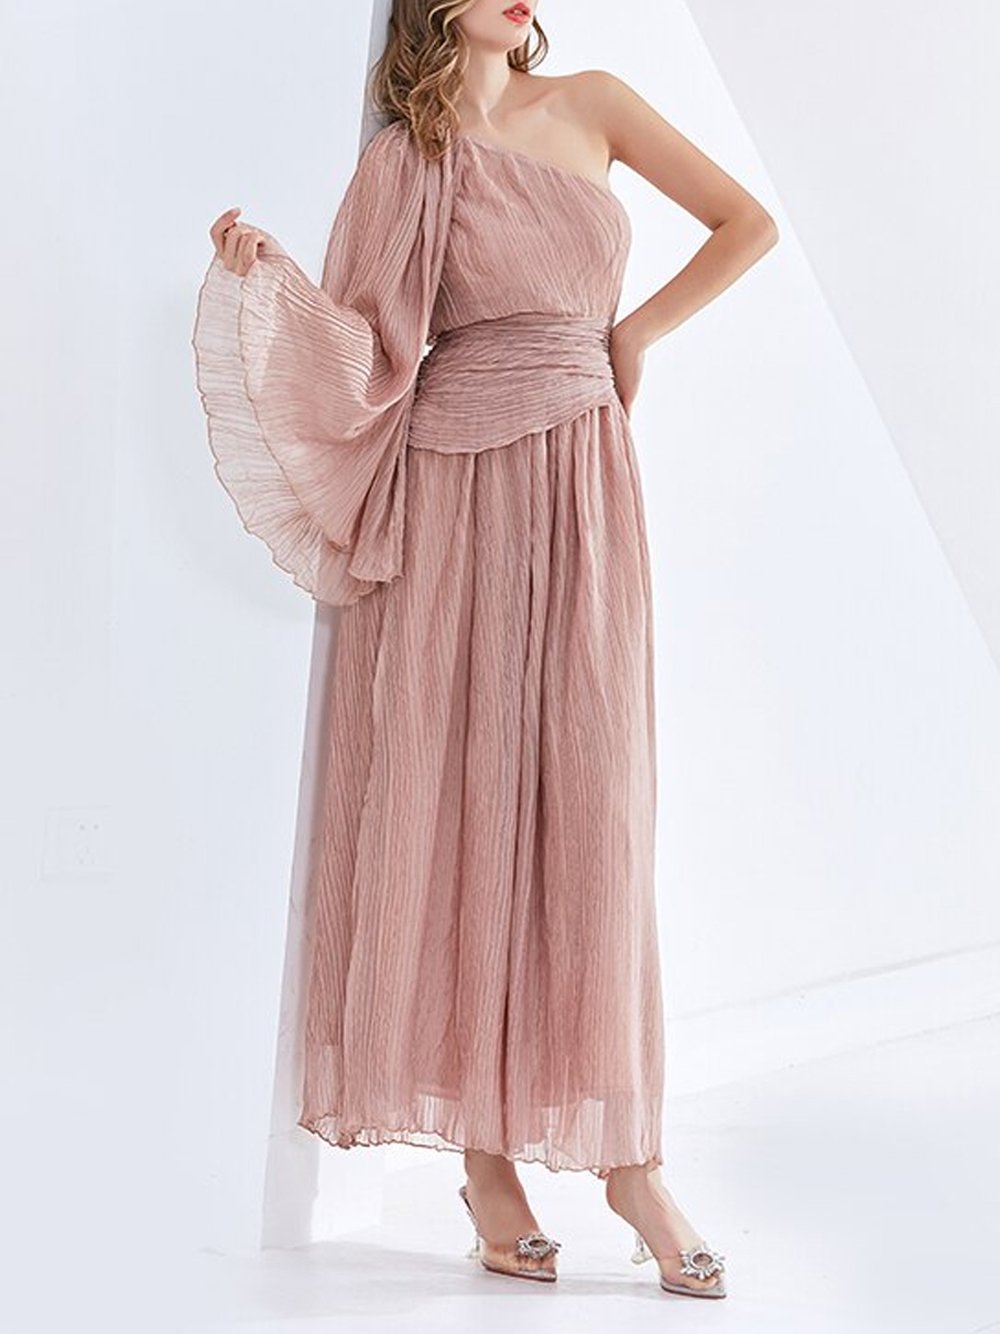 RASSELA Asymmetrical Ruched Dress